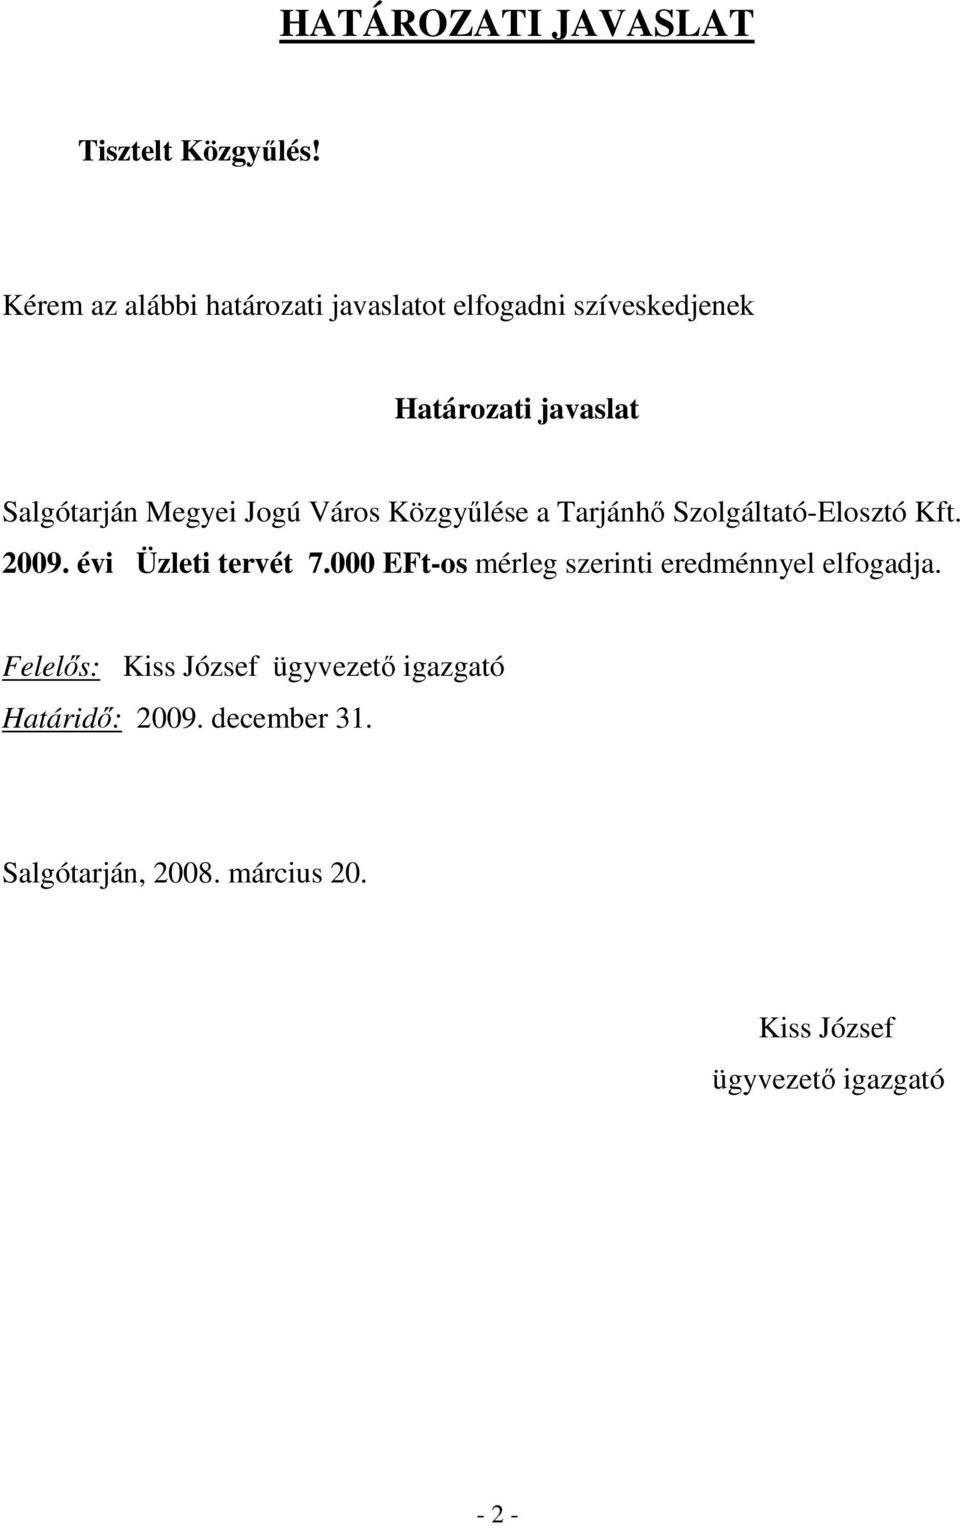 Jogú Város Közgyőlése a Tarjánhı Szolgáltató-Elosztó Kft. 2009. évi Üzleti tervét 7.